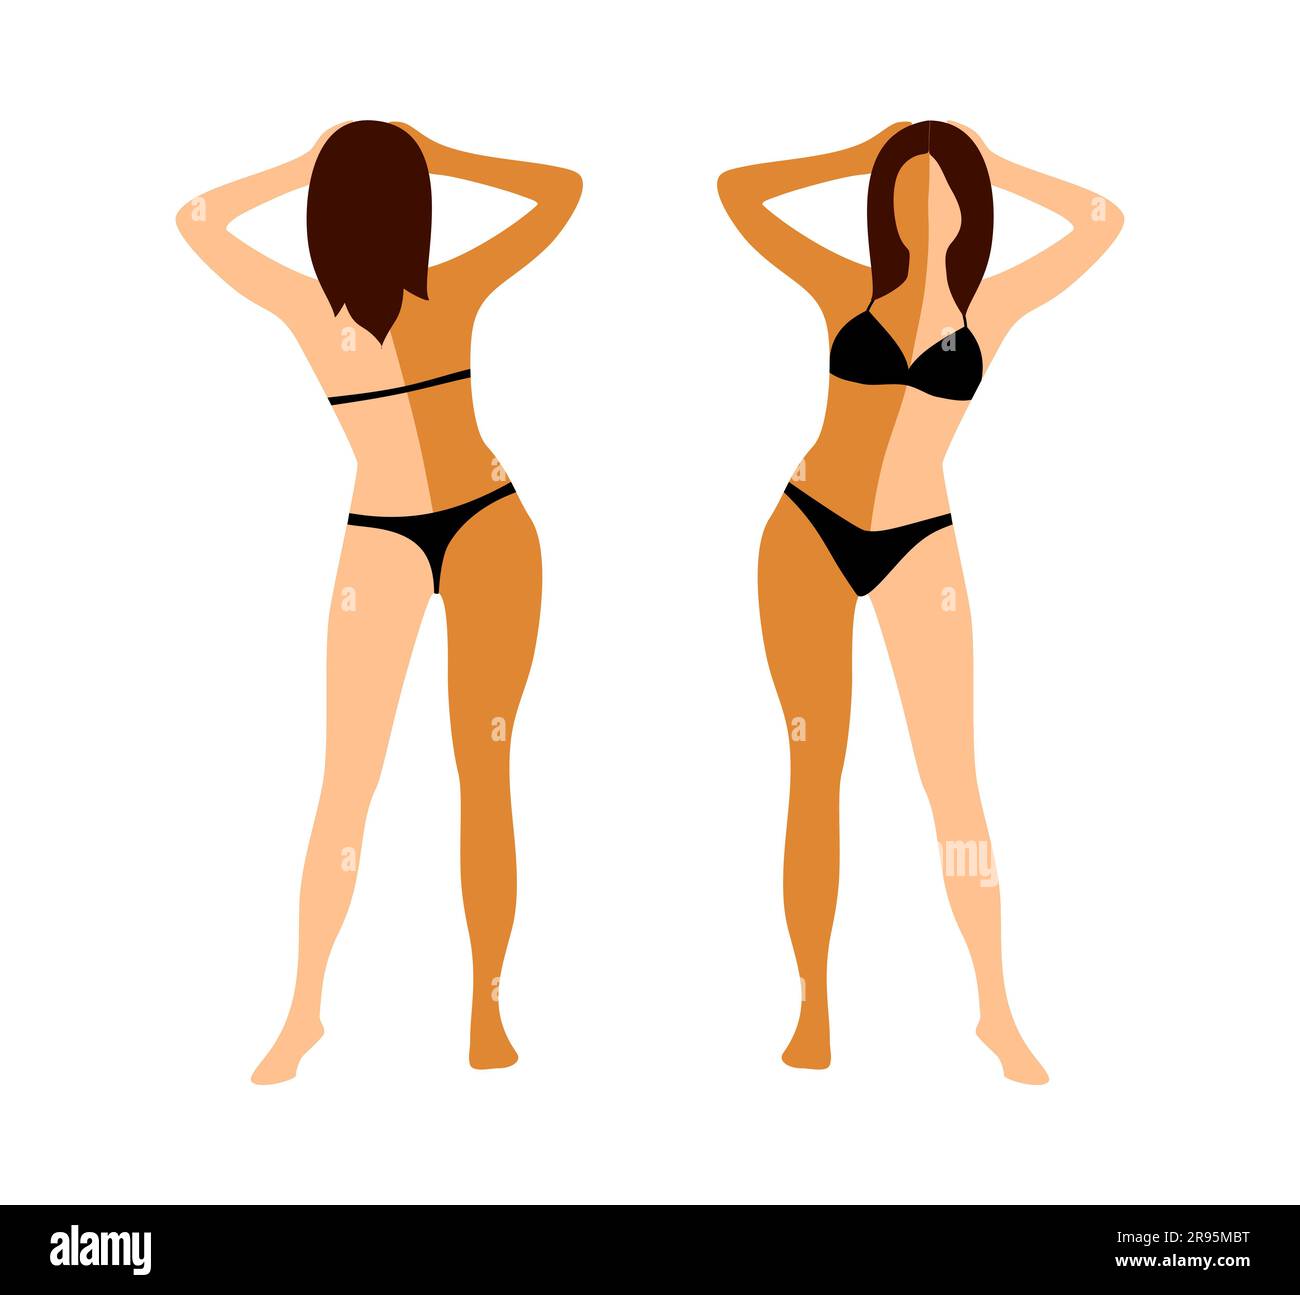 Donna in bikini nero a tutta altezza con un corpo semi abbronzato prima e dopo l'abbronzatura istantanea su sfondo bianco. Vista anteriore e posteriore Illustrazione Vettoriale